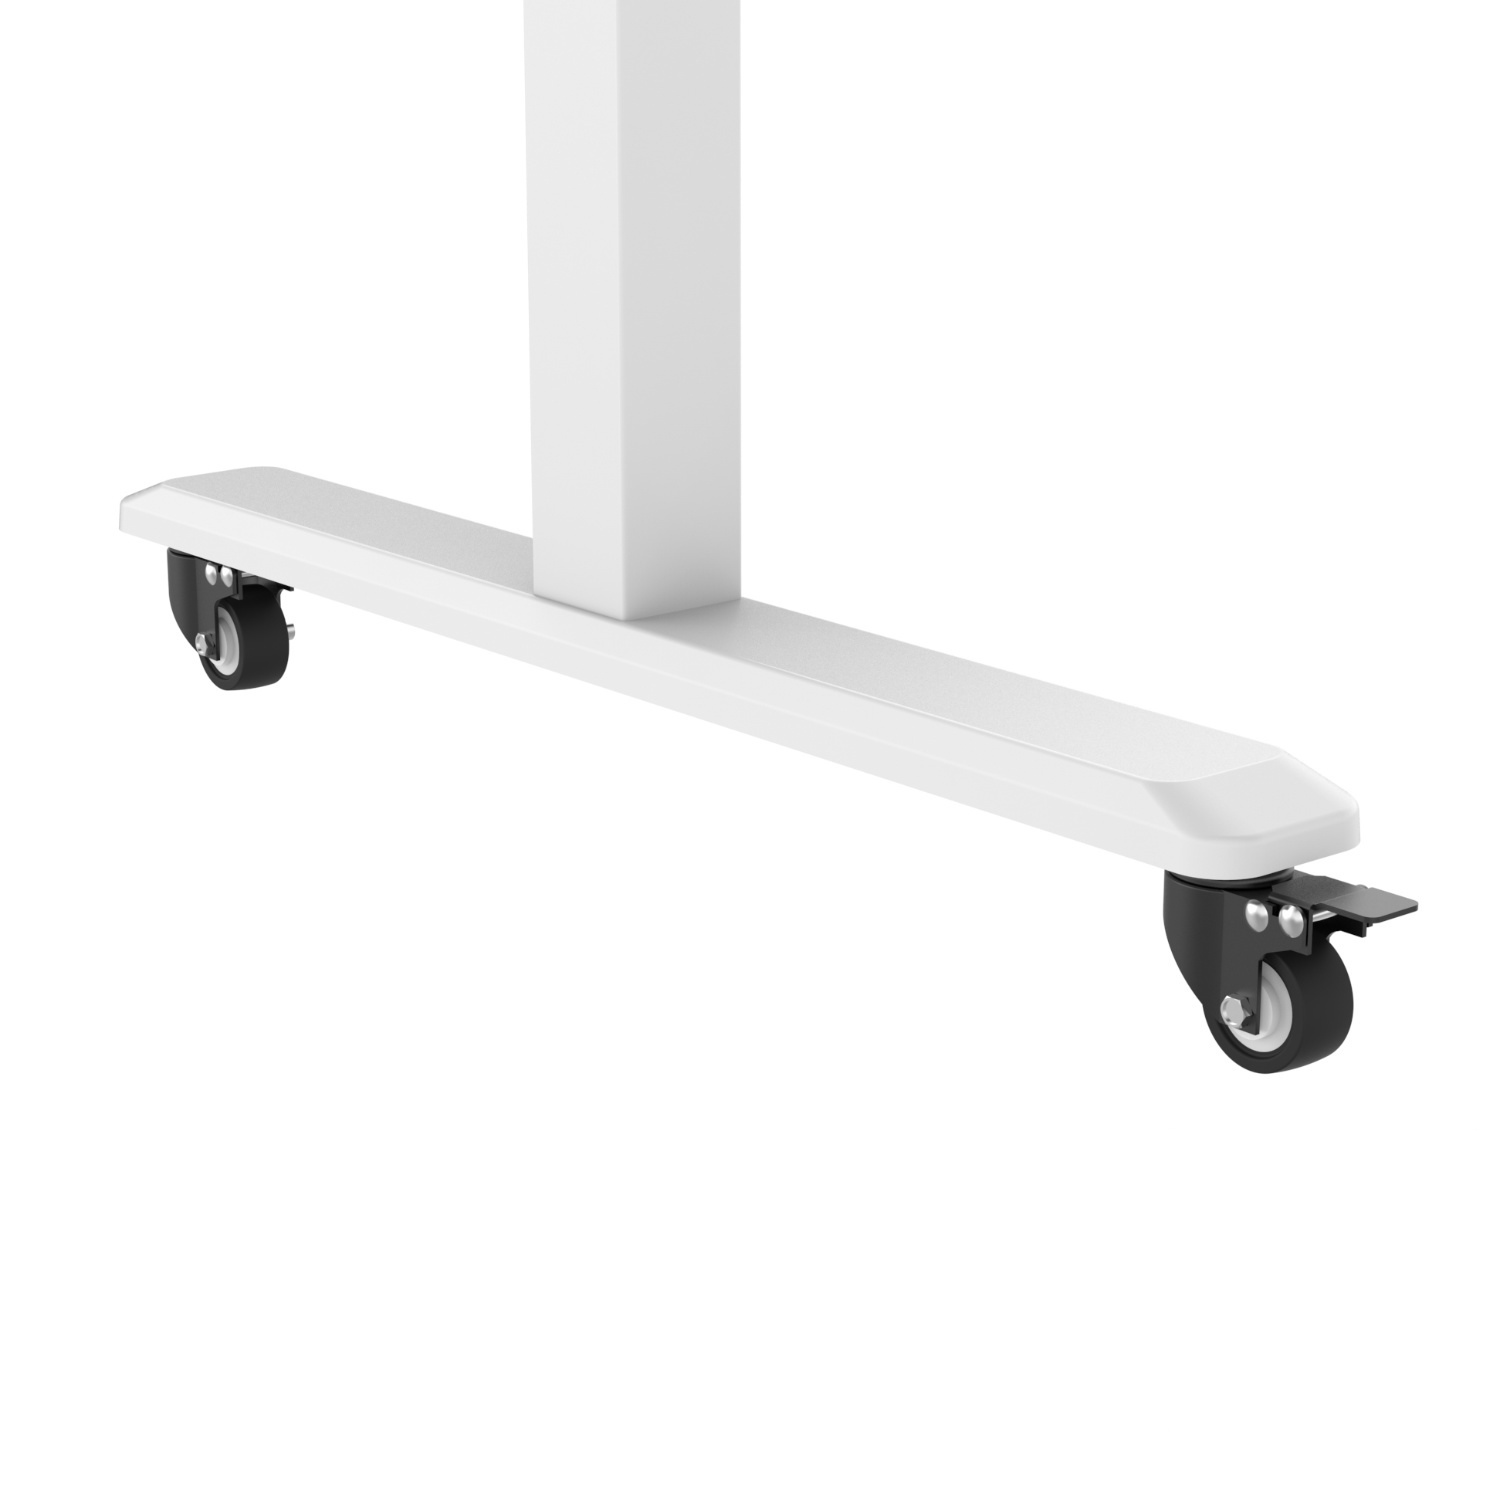 Höhenverstellbare Schreibtisch-Füße Tischgestell mit HOKO Handkurbel